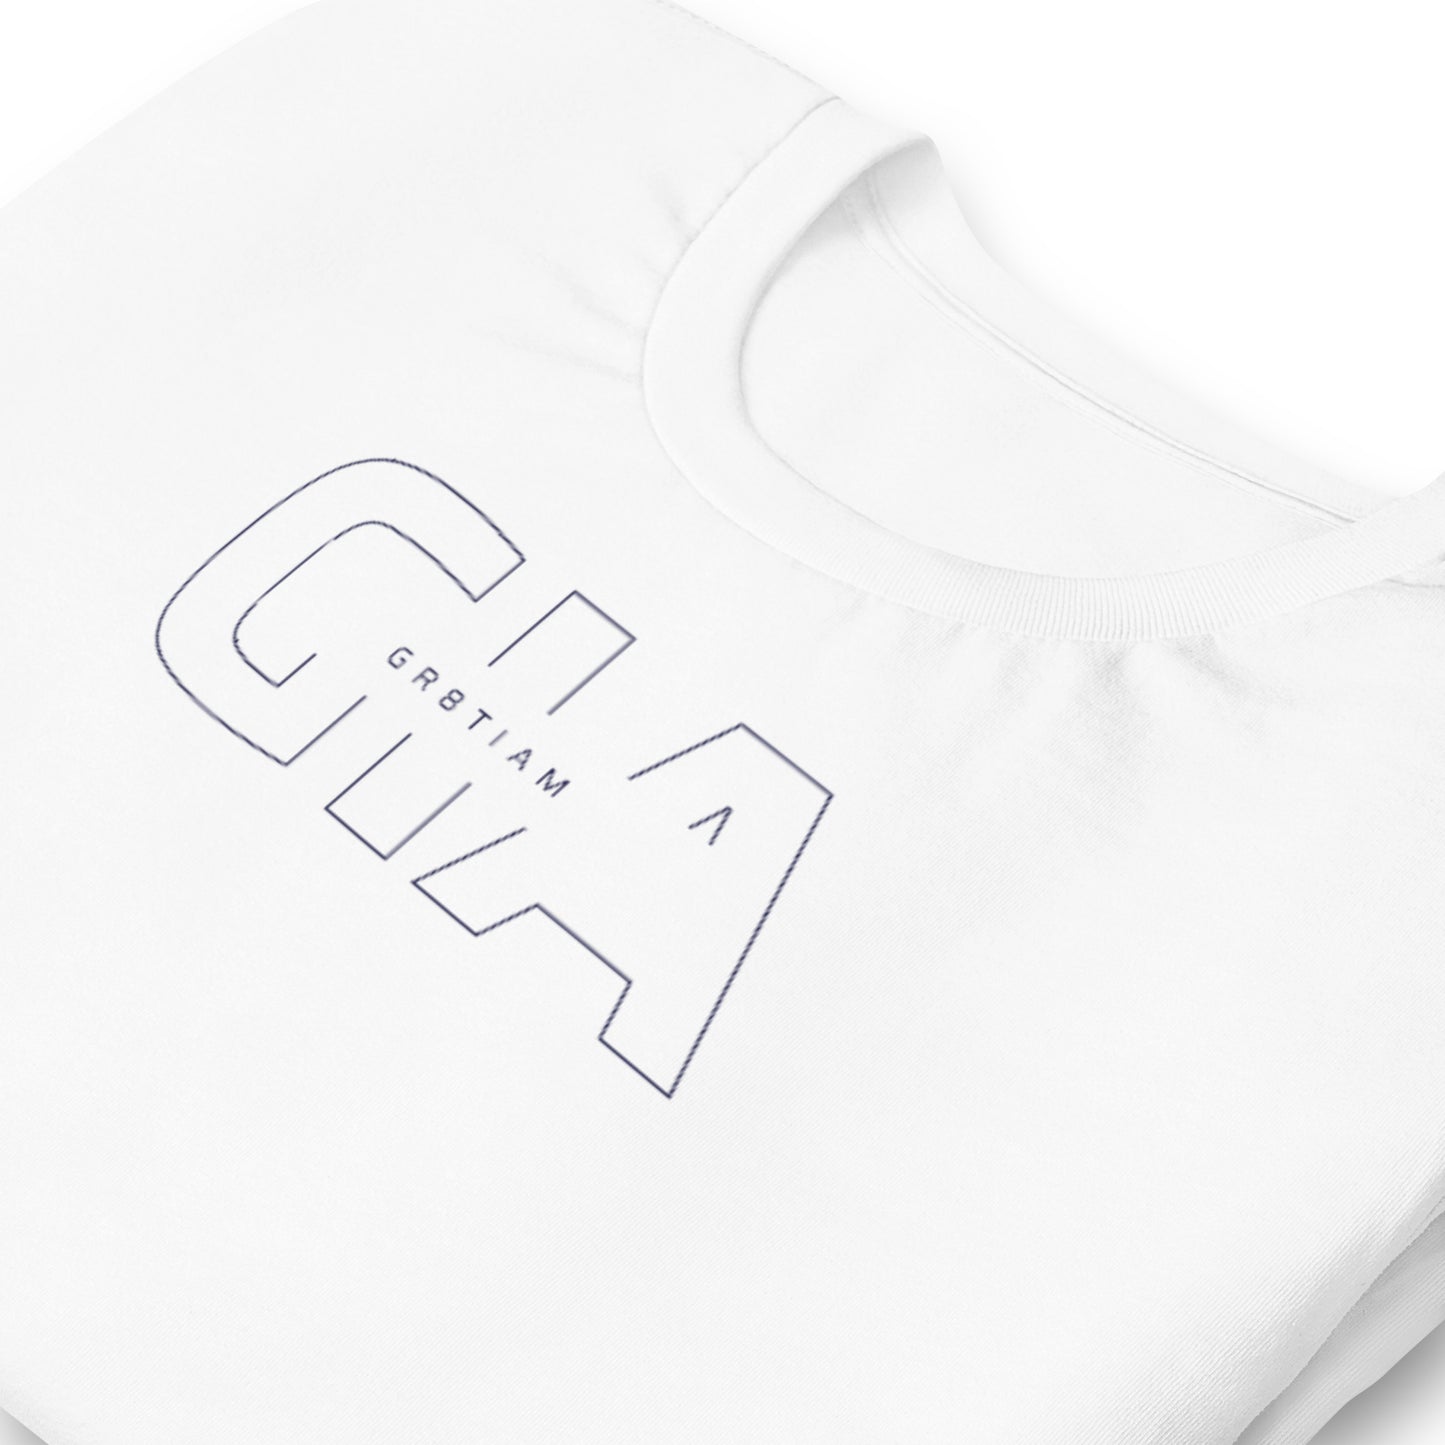 Short-Sleeve Unisex GIA T-Shirt